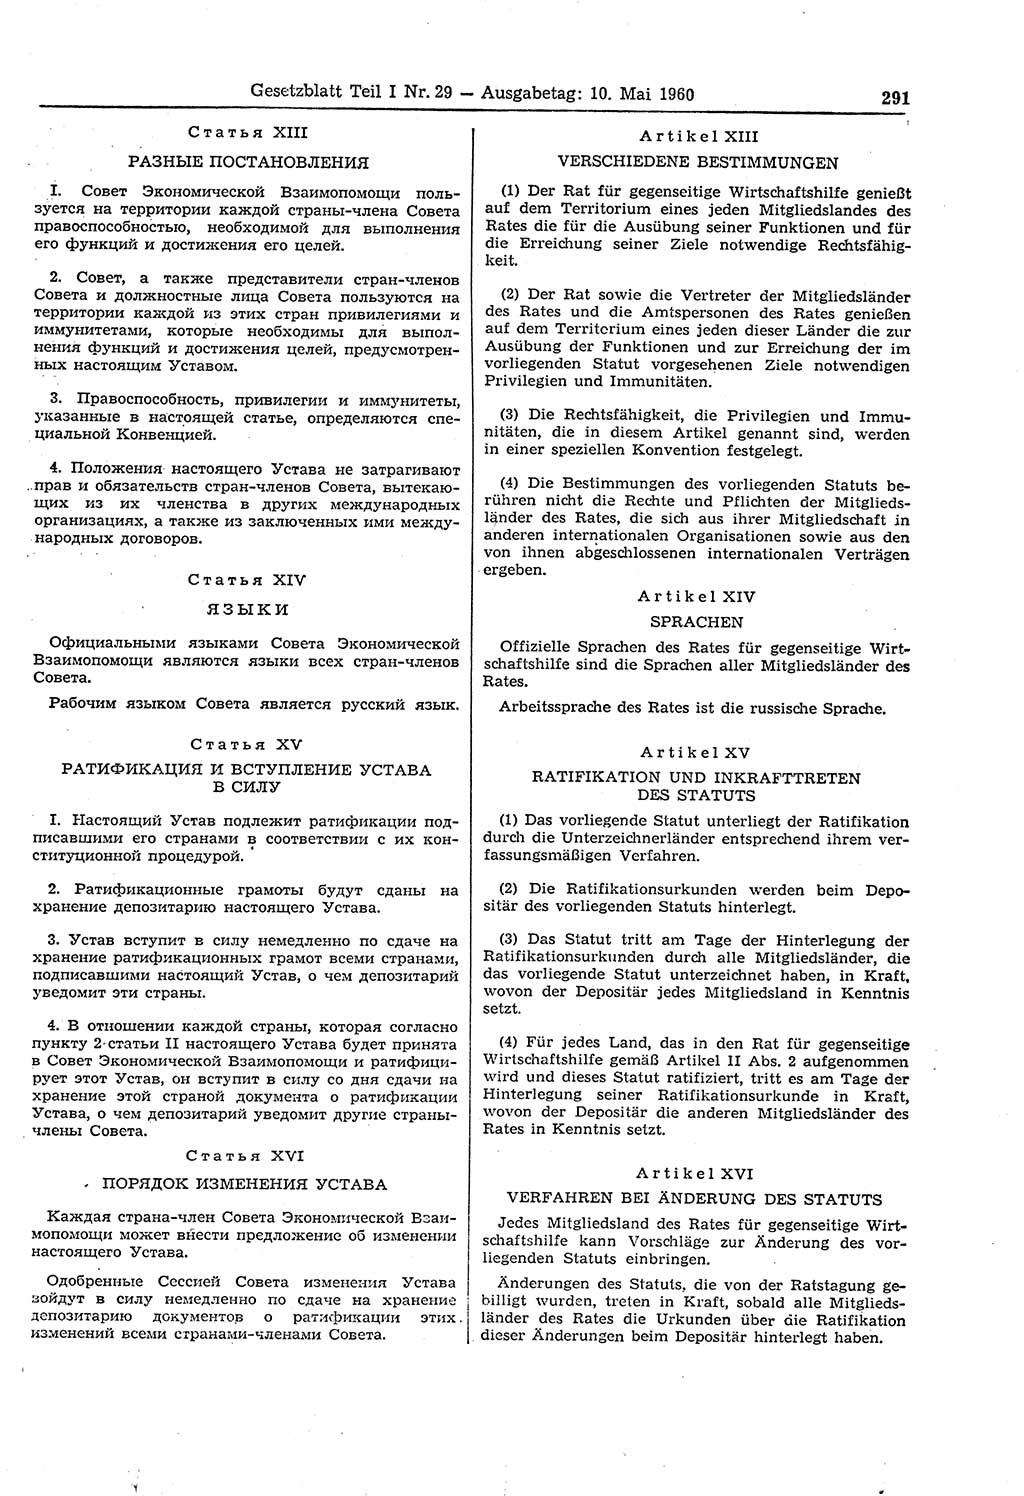 Gesetzblatt (GBl.) der Deutschen Demokratischen Republik (DDR) Teil Ⅰ 1960, Seite 291 (GBl. DDR Ⅰ 1960, S. 291)